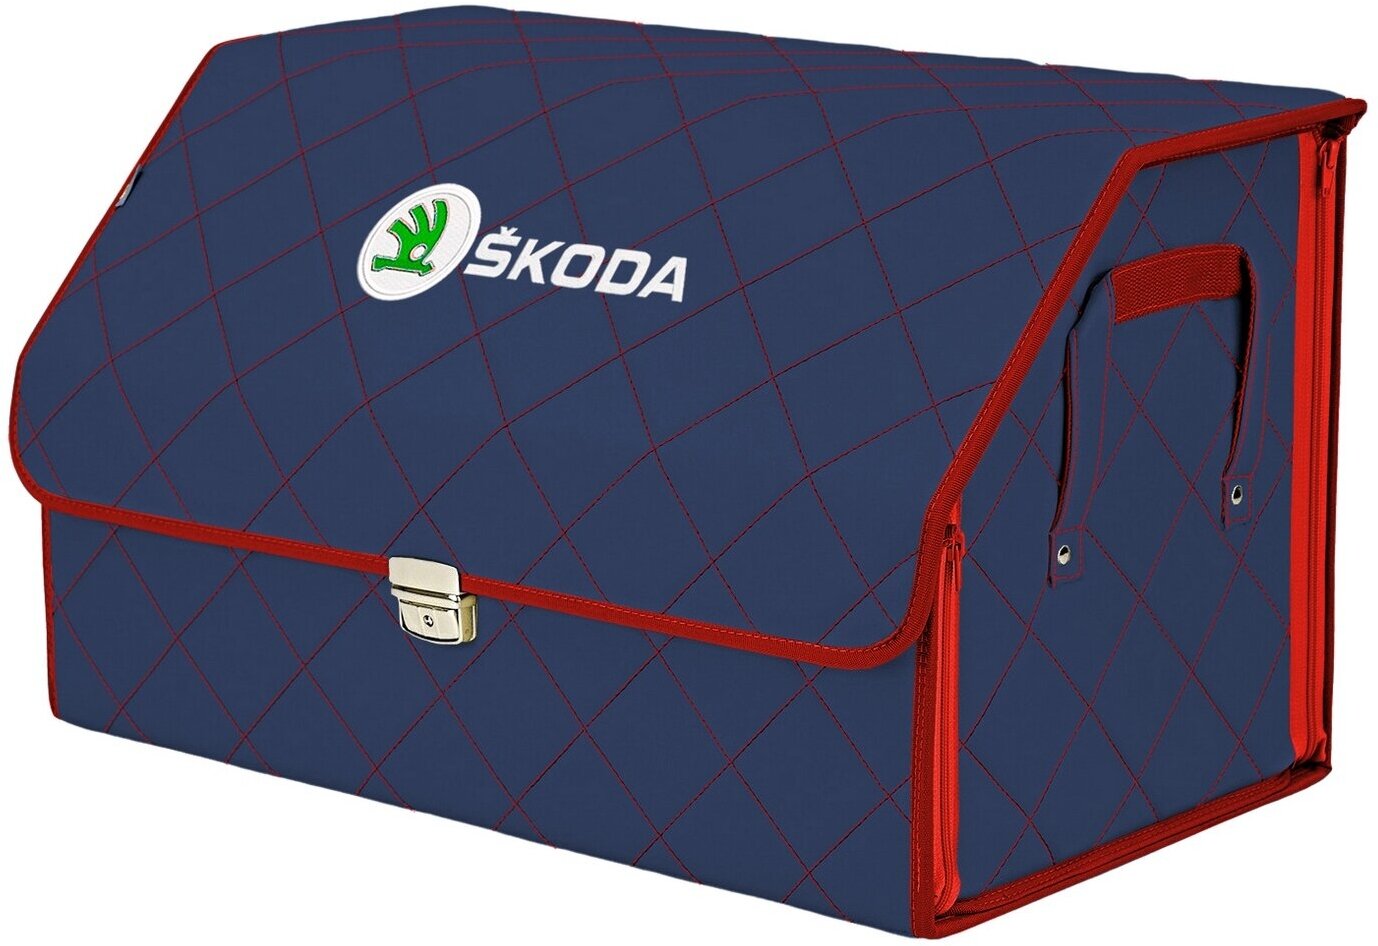 Органайзер-саквояж в багажник "Союз Премиум" (размер XL). Цвет: синий с красной прострочкой Ромб и вышивкой Skoda (Шкода).